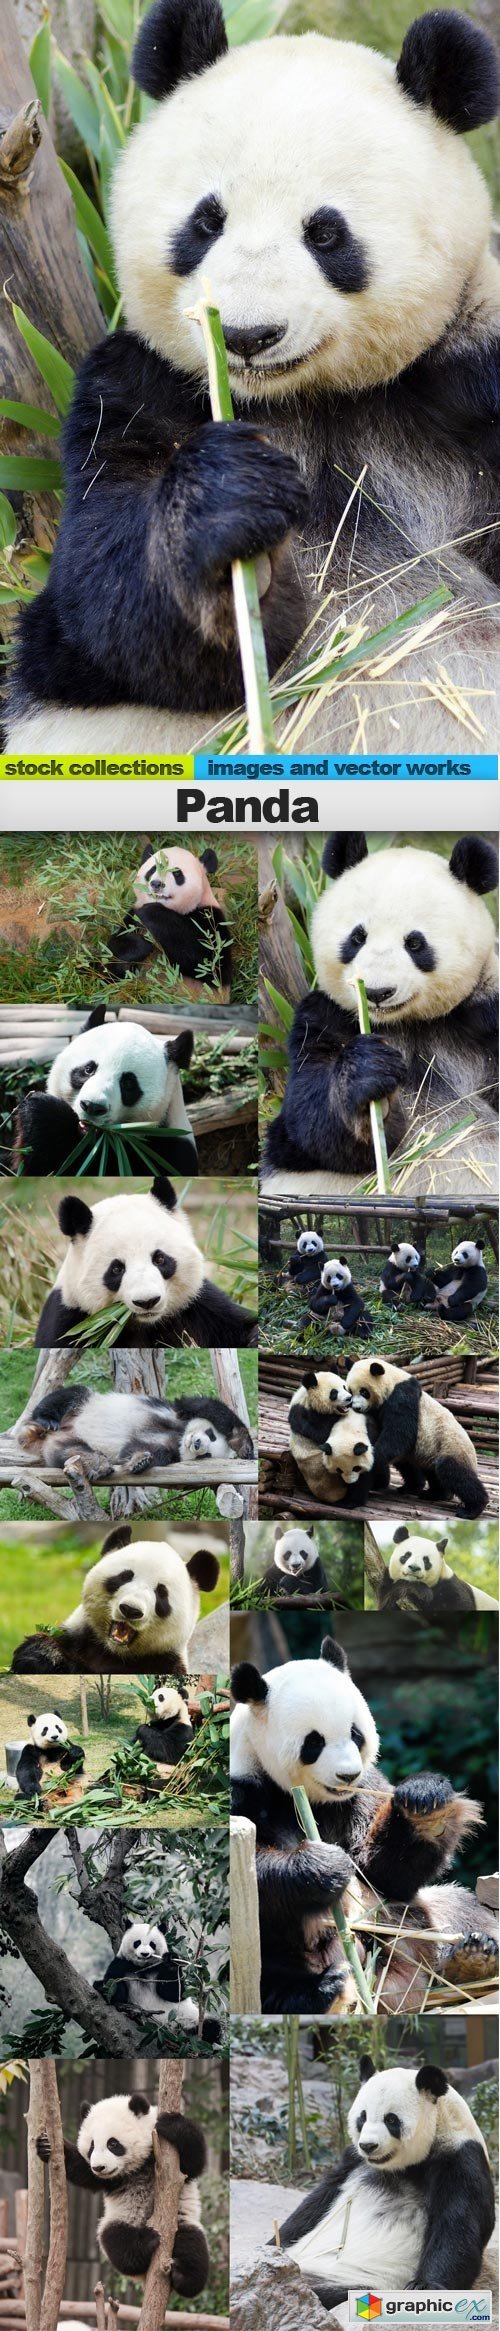 Panda, 15 x UHQ JPEG